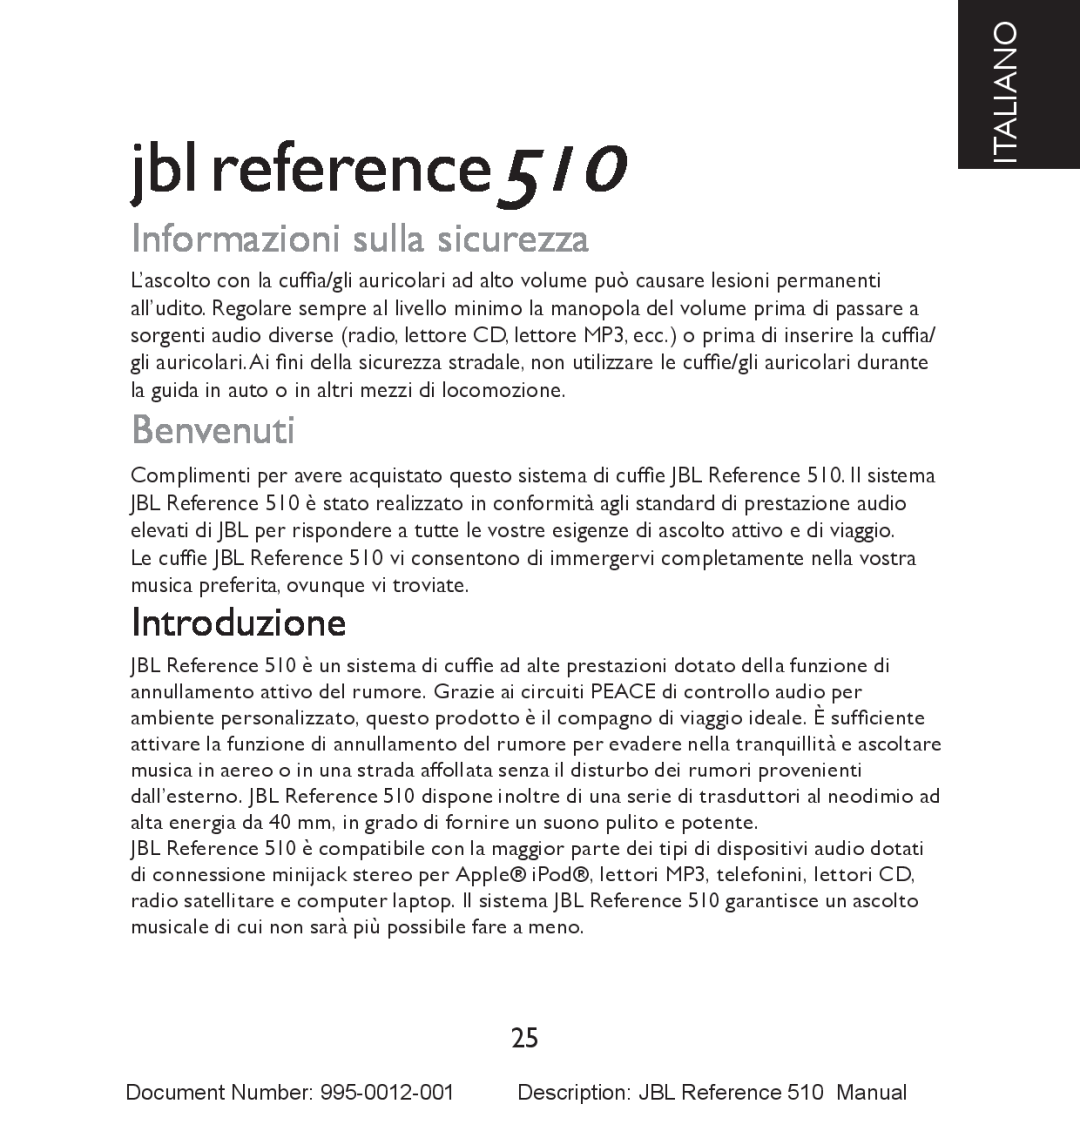 JBL manual Informazioni sulla sicurezza, Benvenuti, Introduzione, Italiano, jbl reference510 